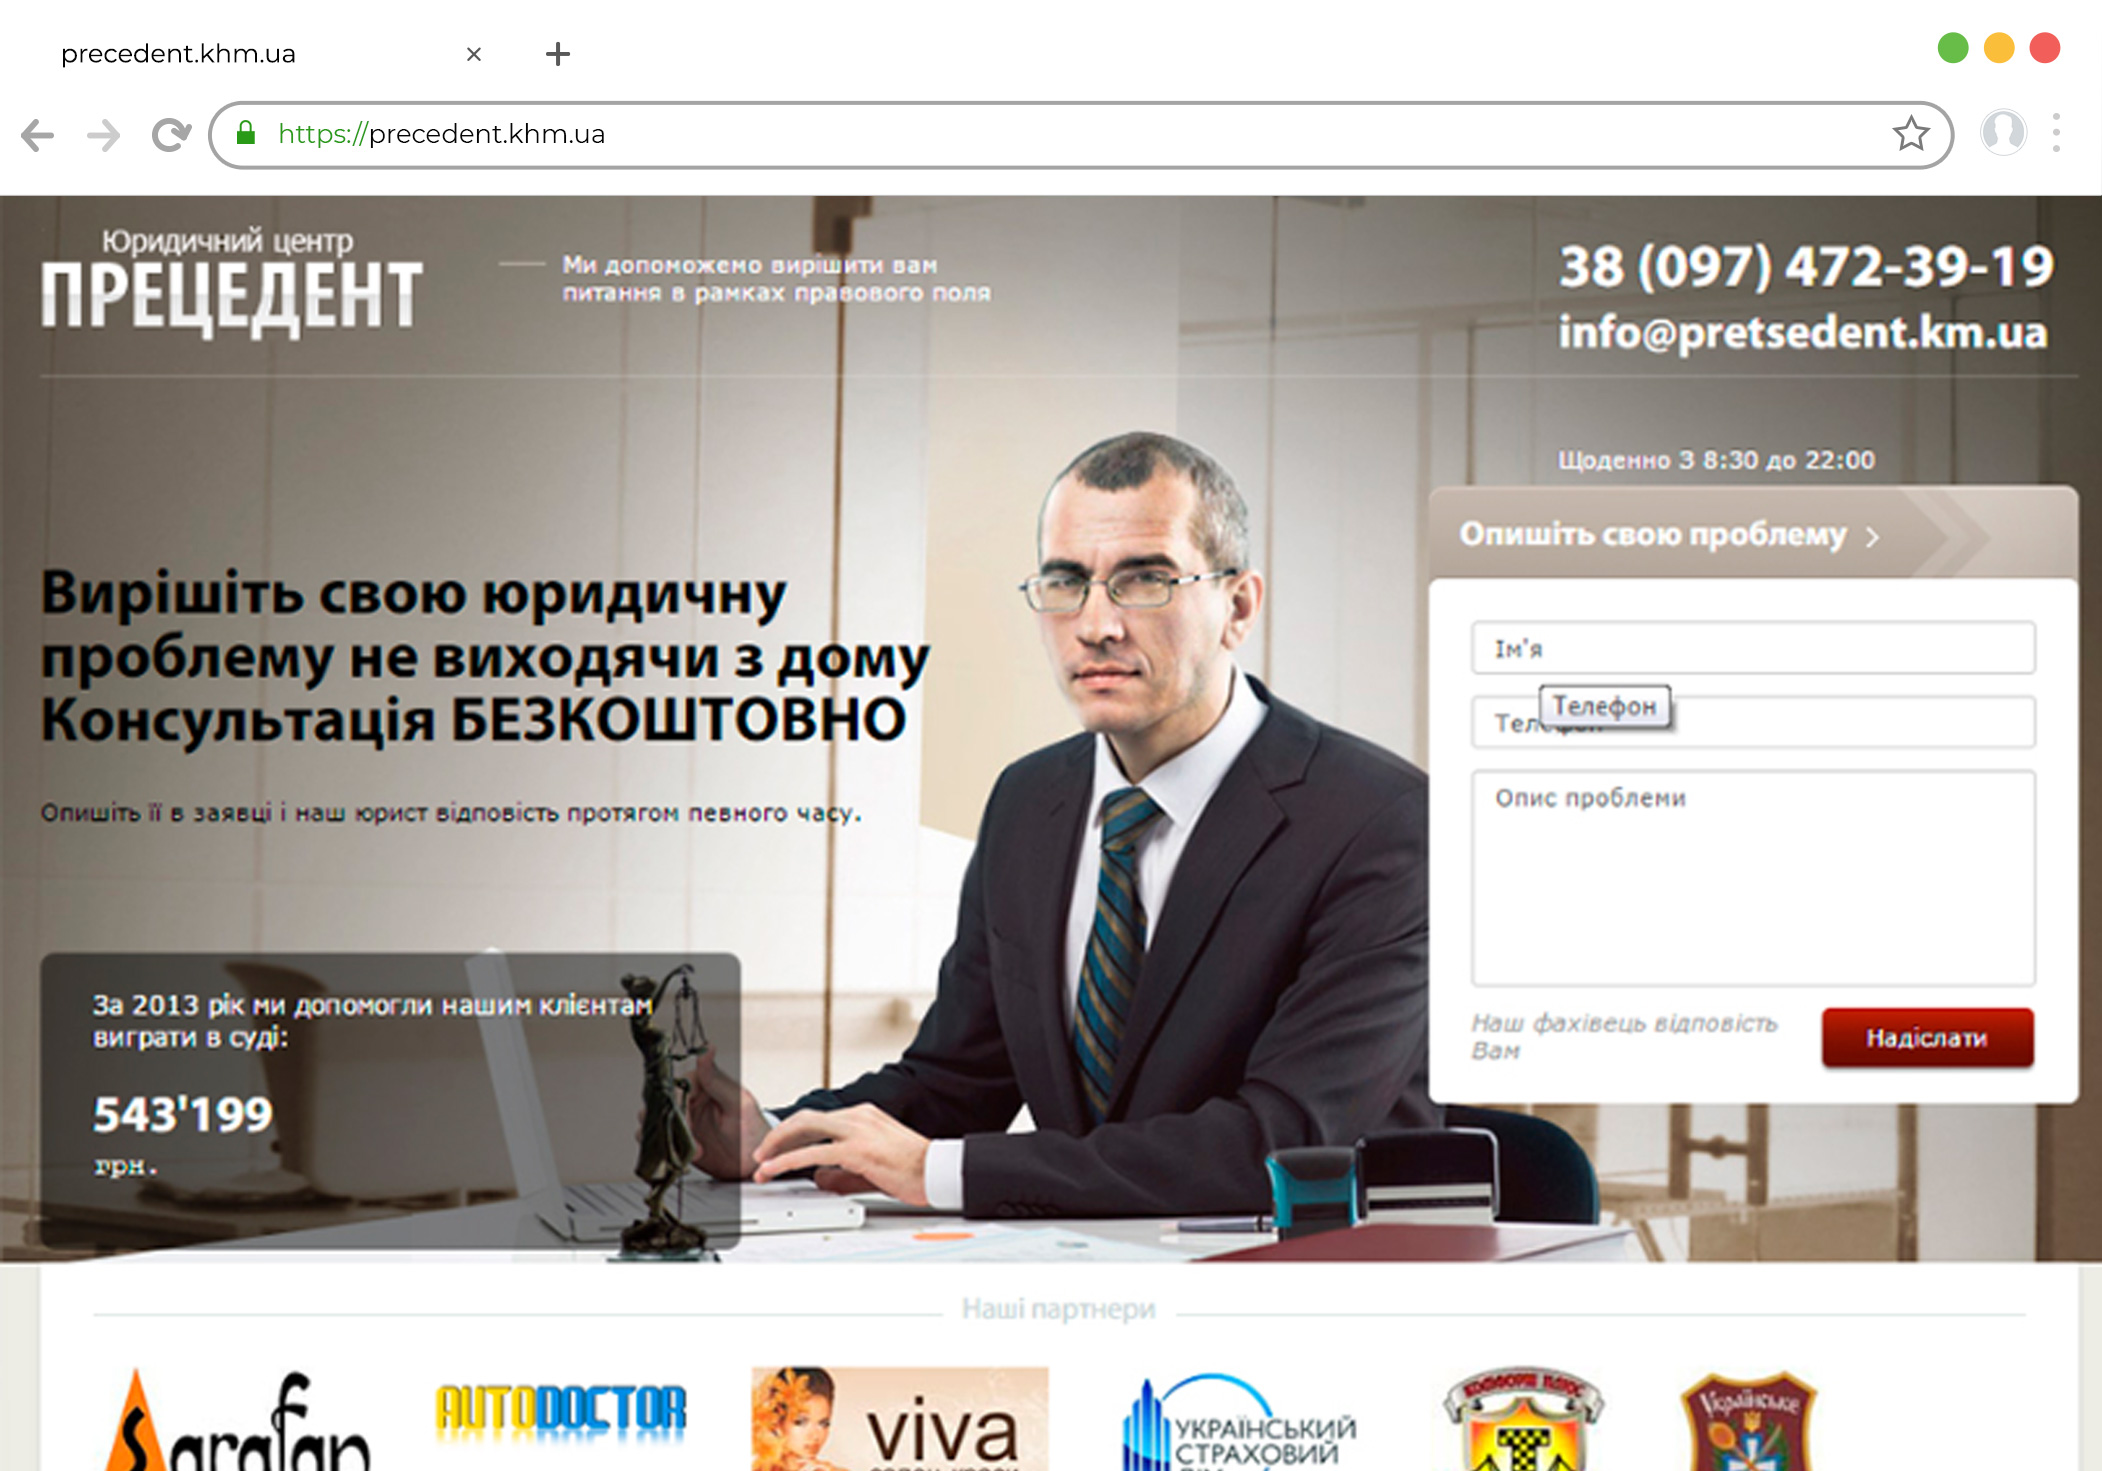 Разработка сайта юридических услуг на Wordpress precedent.km.ua